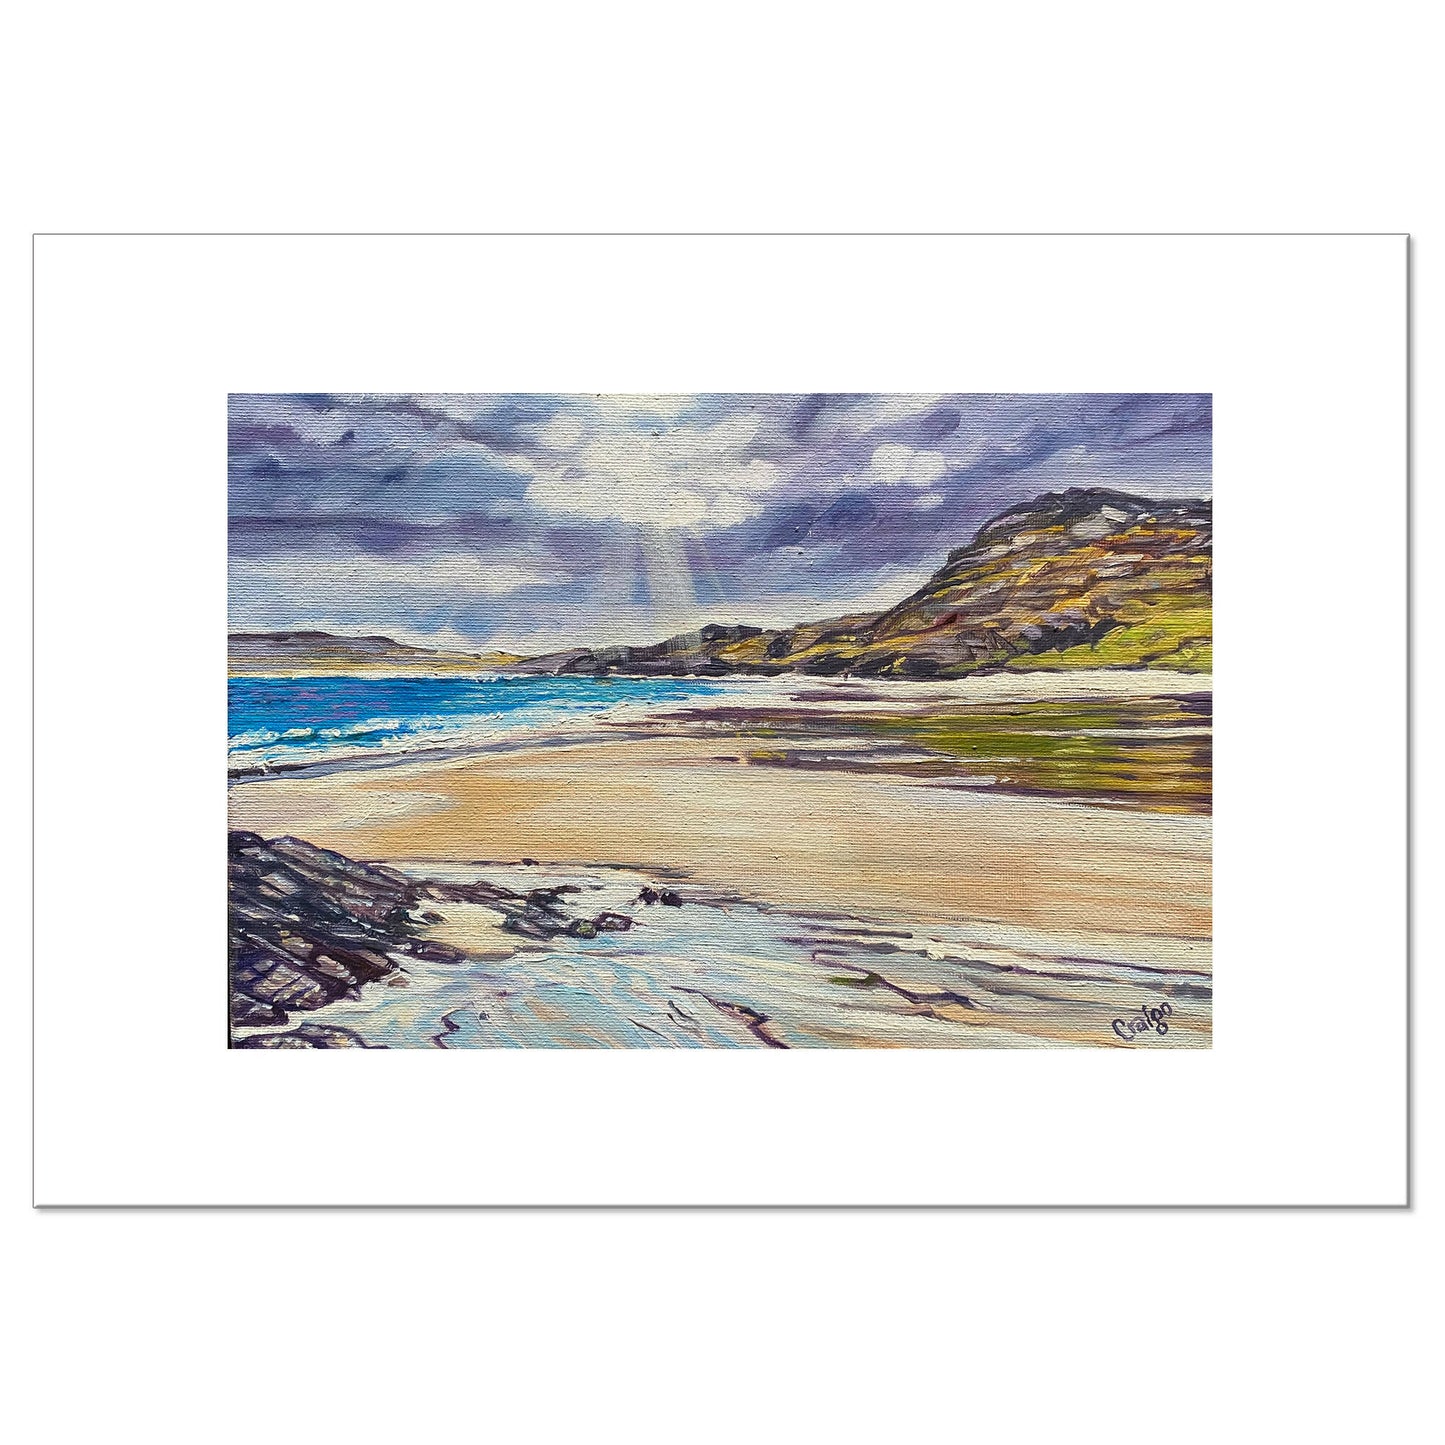 'Cleat, Isle of Barra' - Giclee Fine Art Print 29.7x42cm